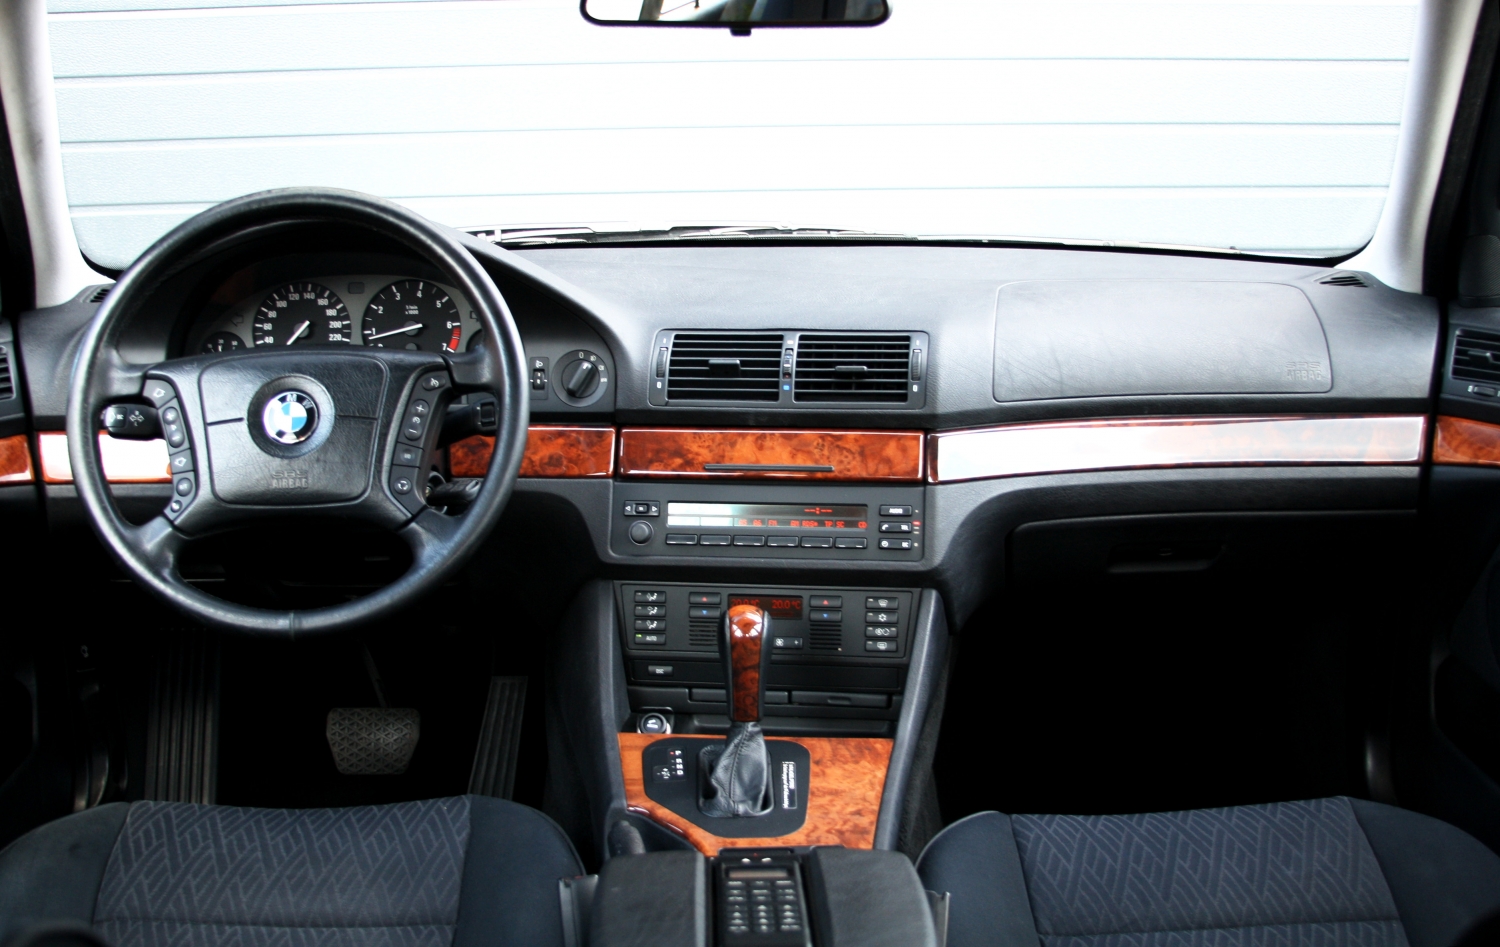 BMW-528i-Touring-E39-1998-007.JPG